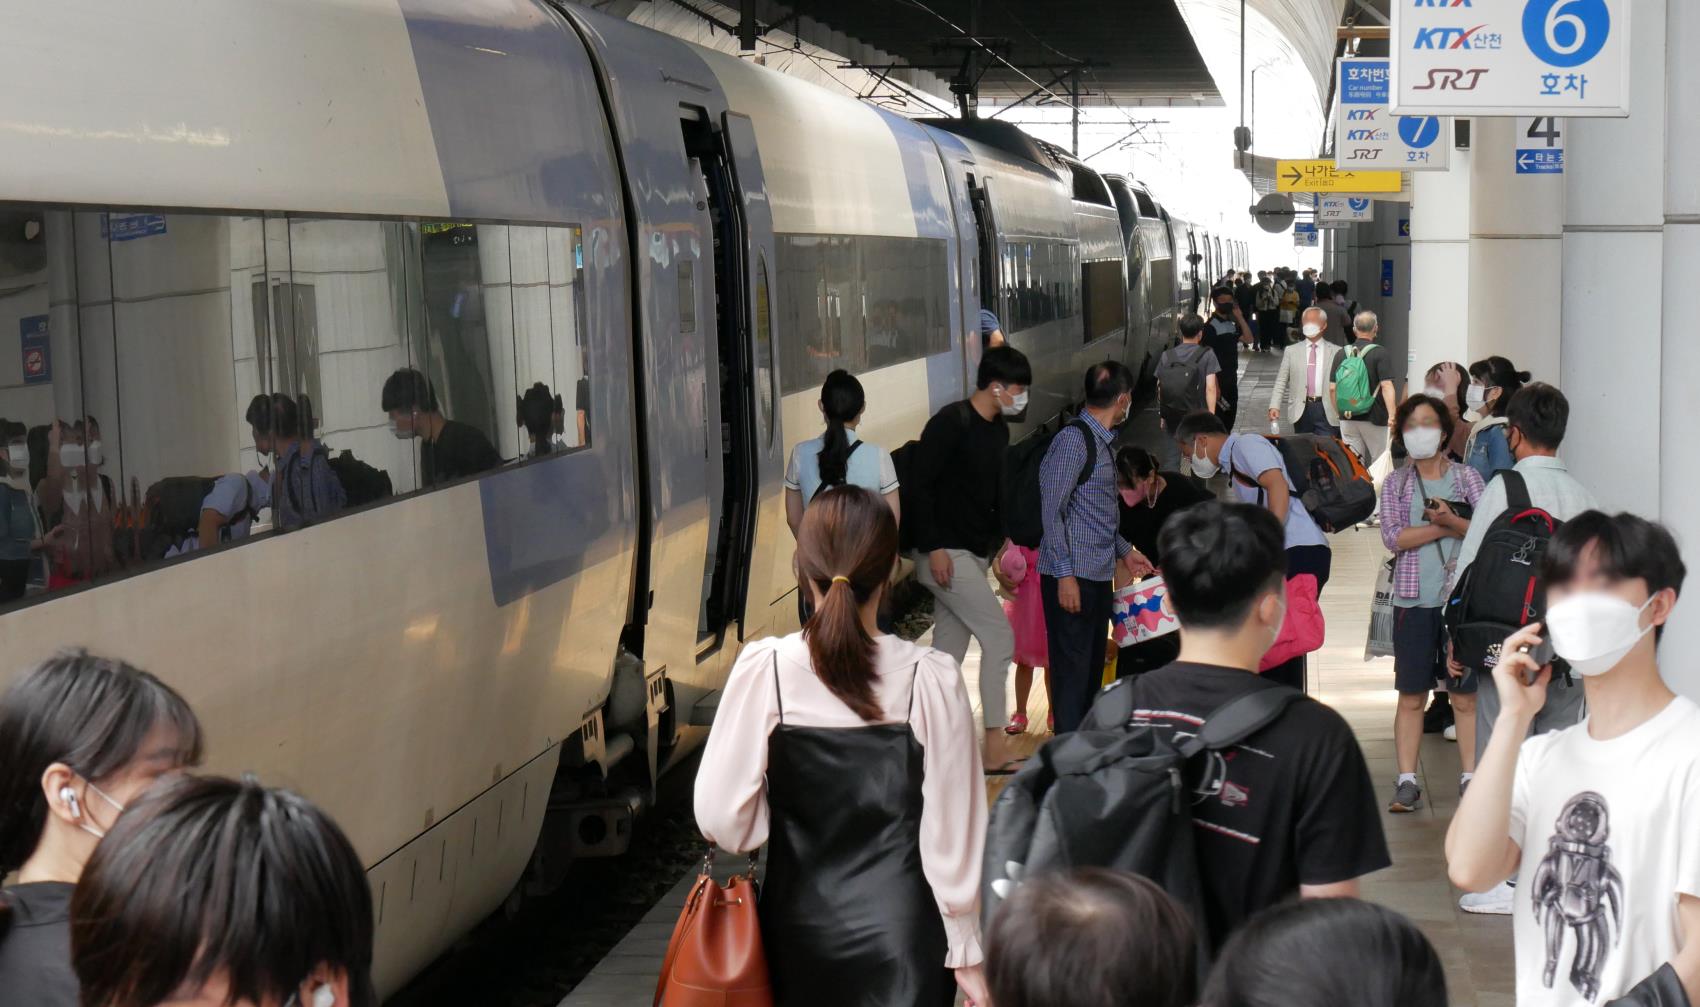 추석 연휴 마지막 날인 22일 오전 대전역이 KTX 열차에서 내린 승객과 탑승하려는 시민들로 붐비고 있다. 윤종운 기자
